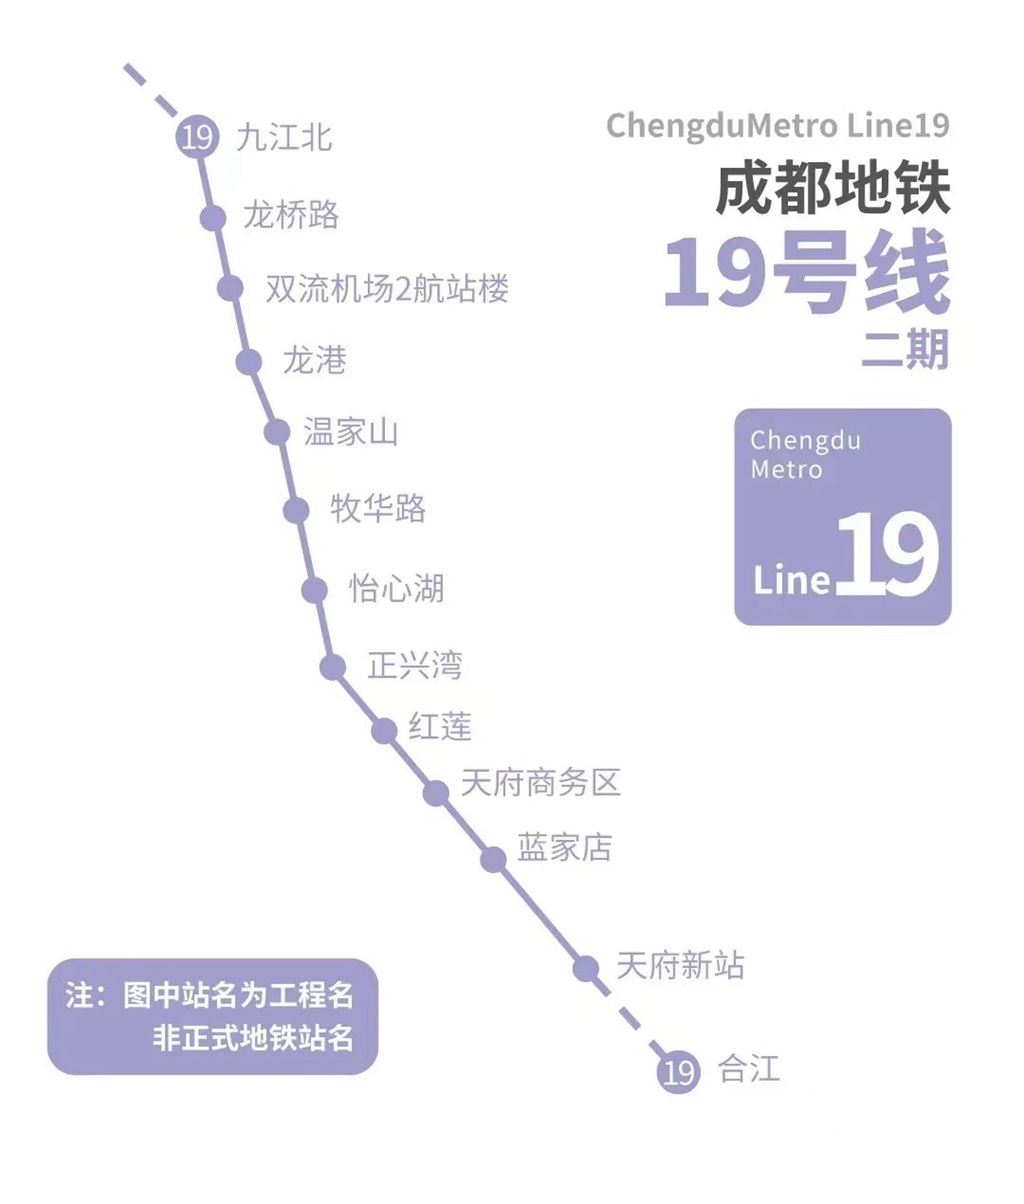 成都地铁19号线二期工程示意图_副本.jpg